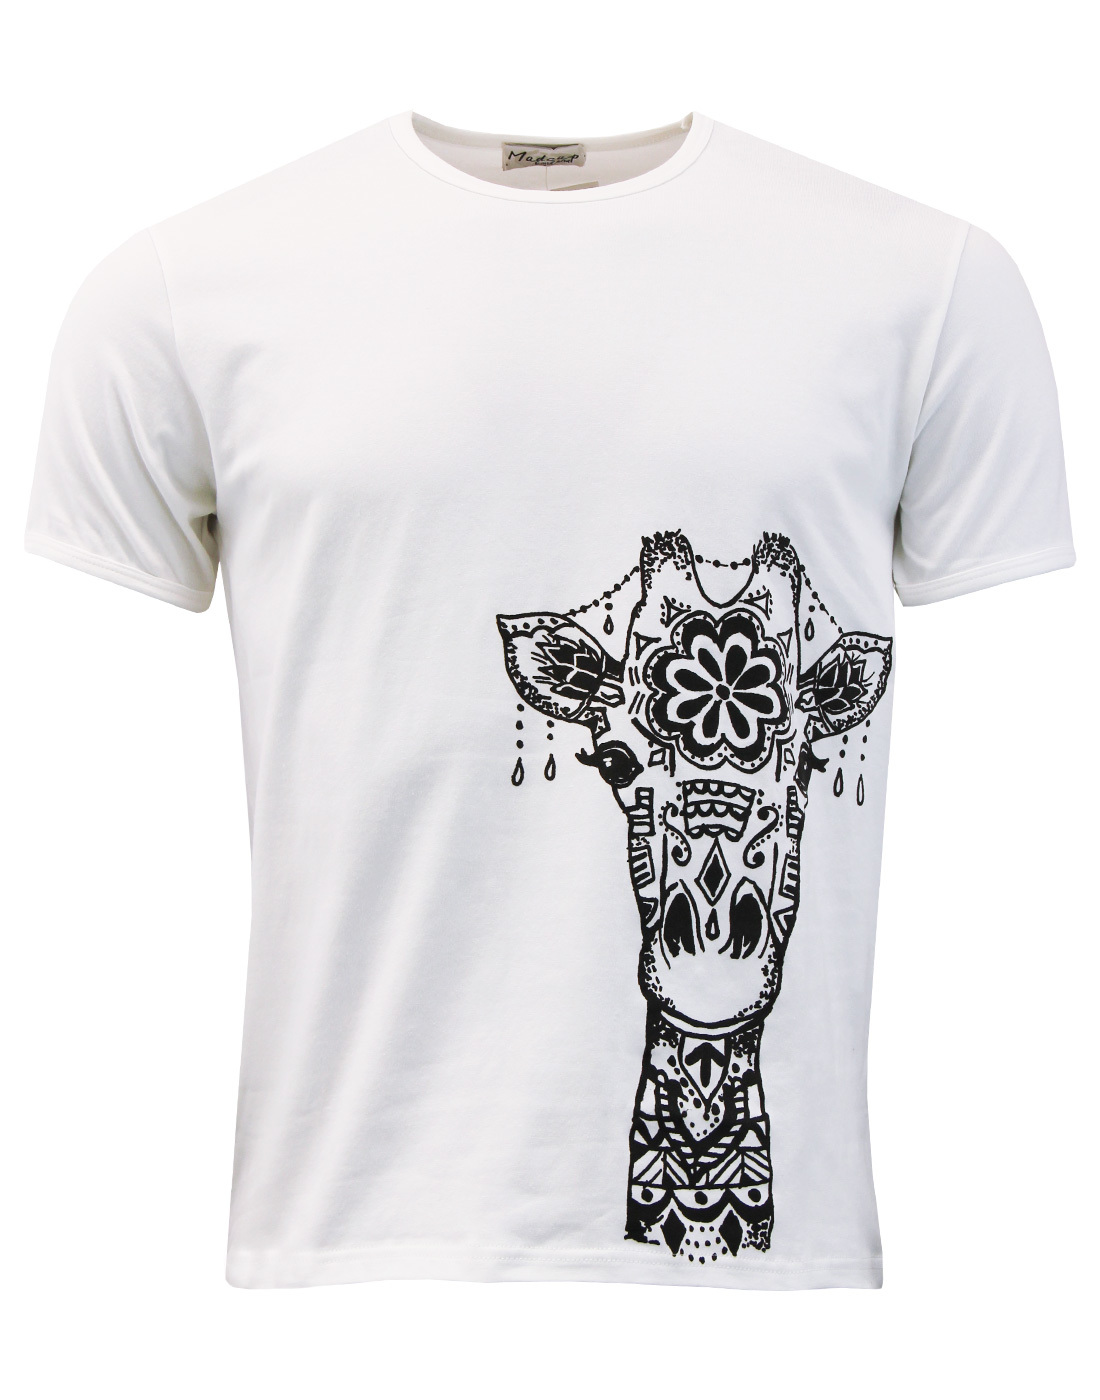 madcap giraffe print t shirt white mod